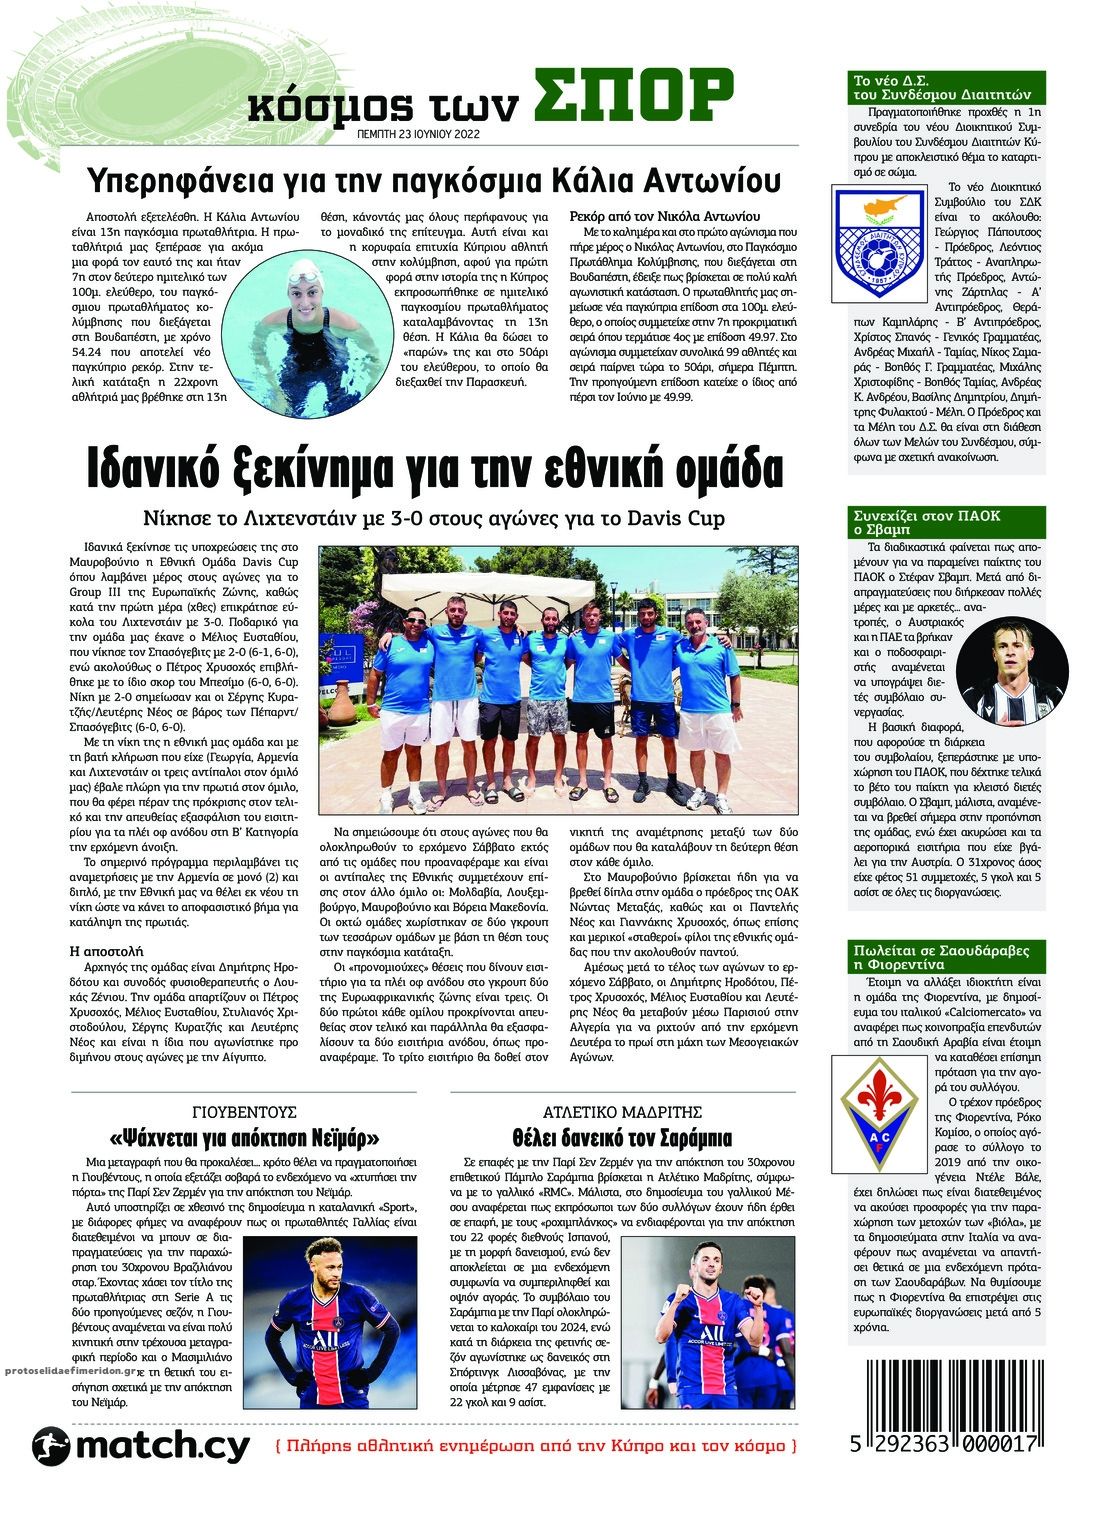 Οπισθόφυλλο εφημερίδας Χαραυγή Κυπρου